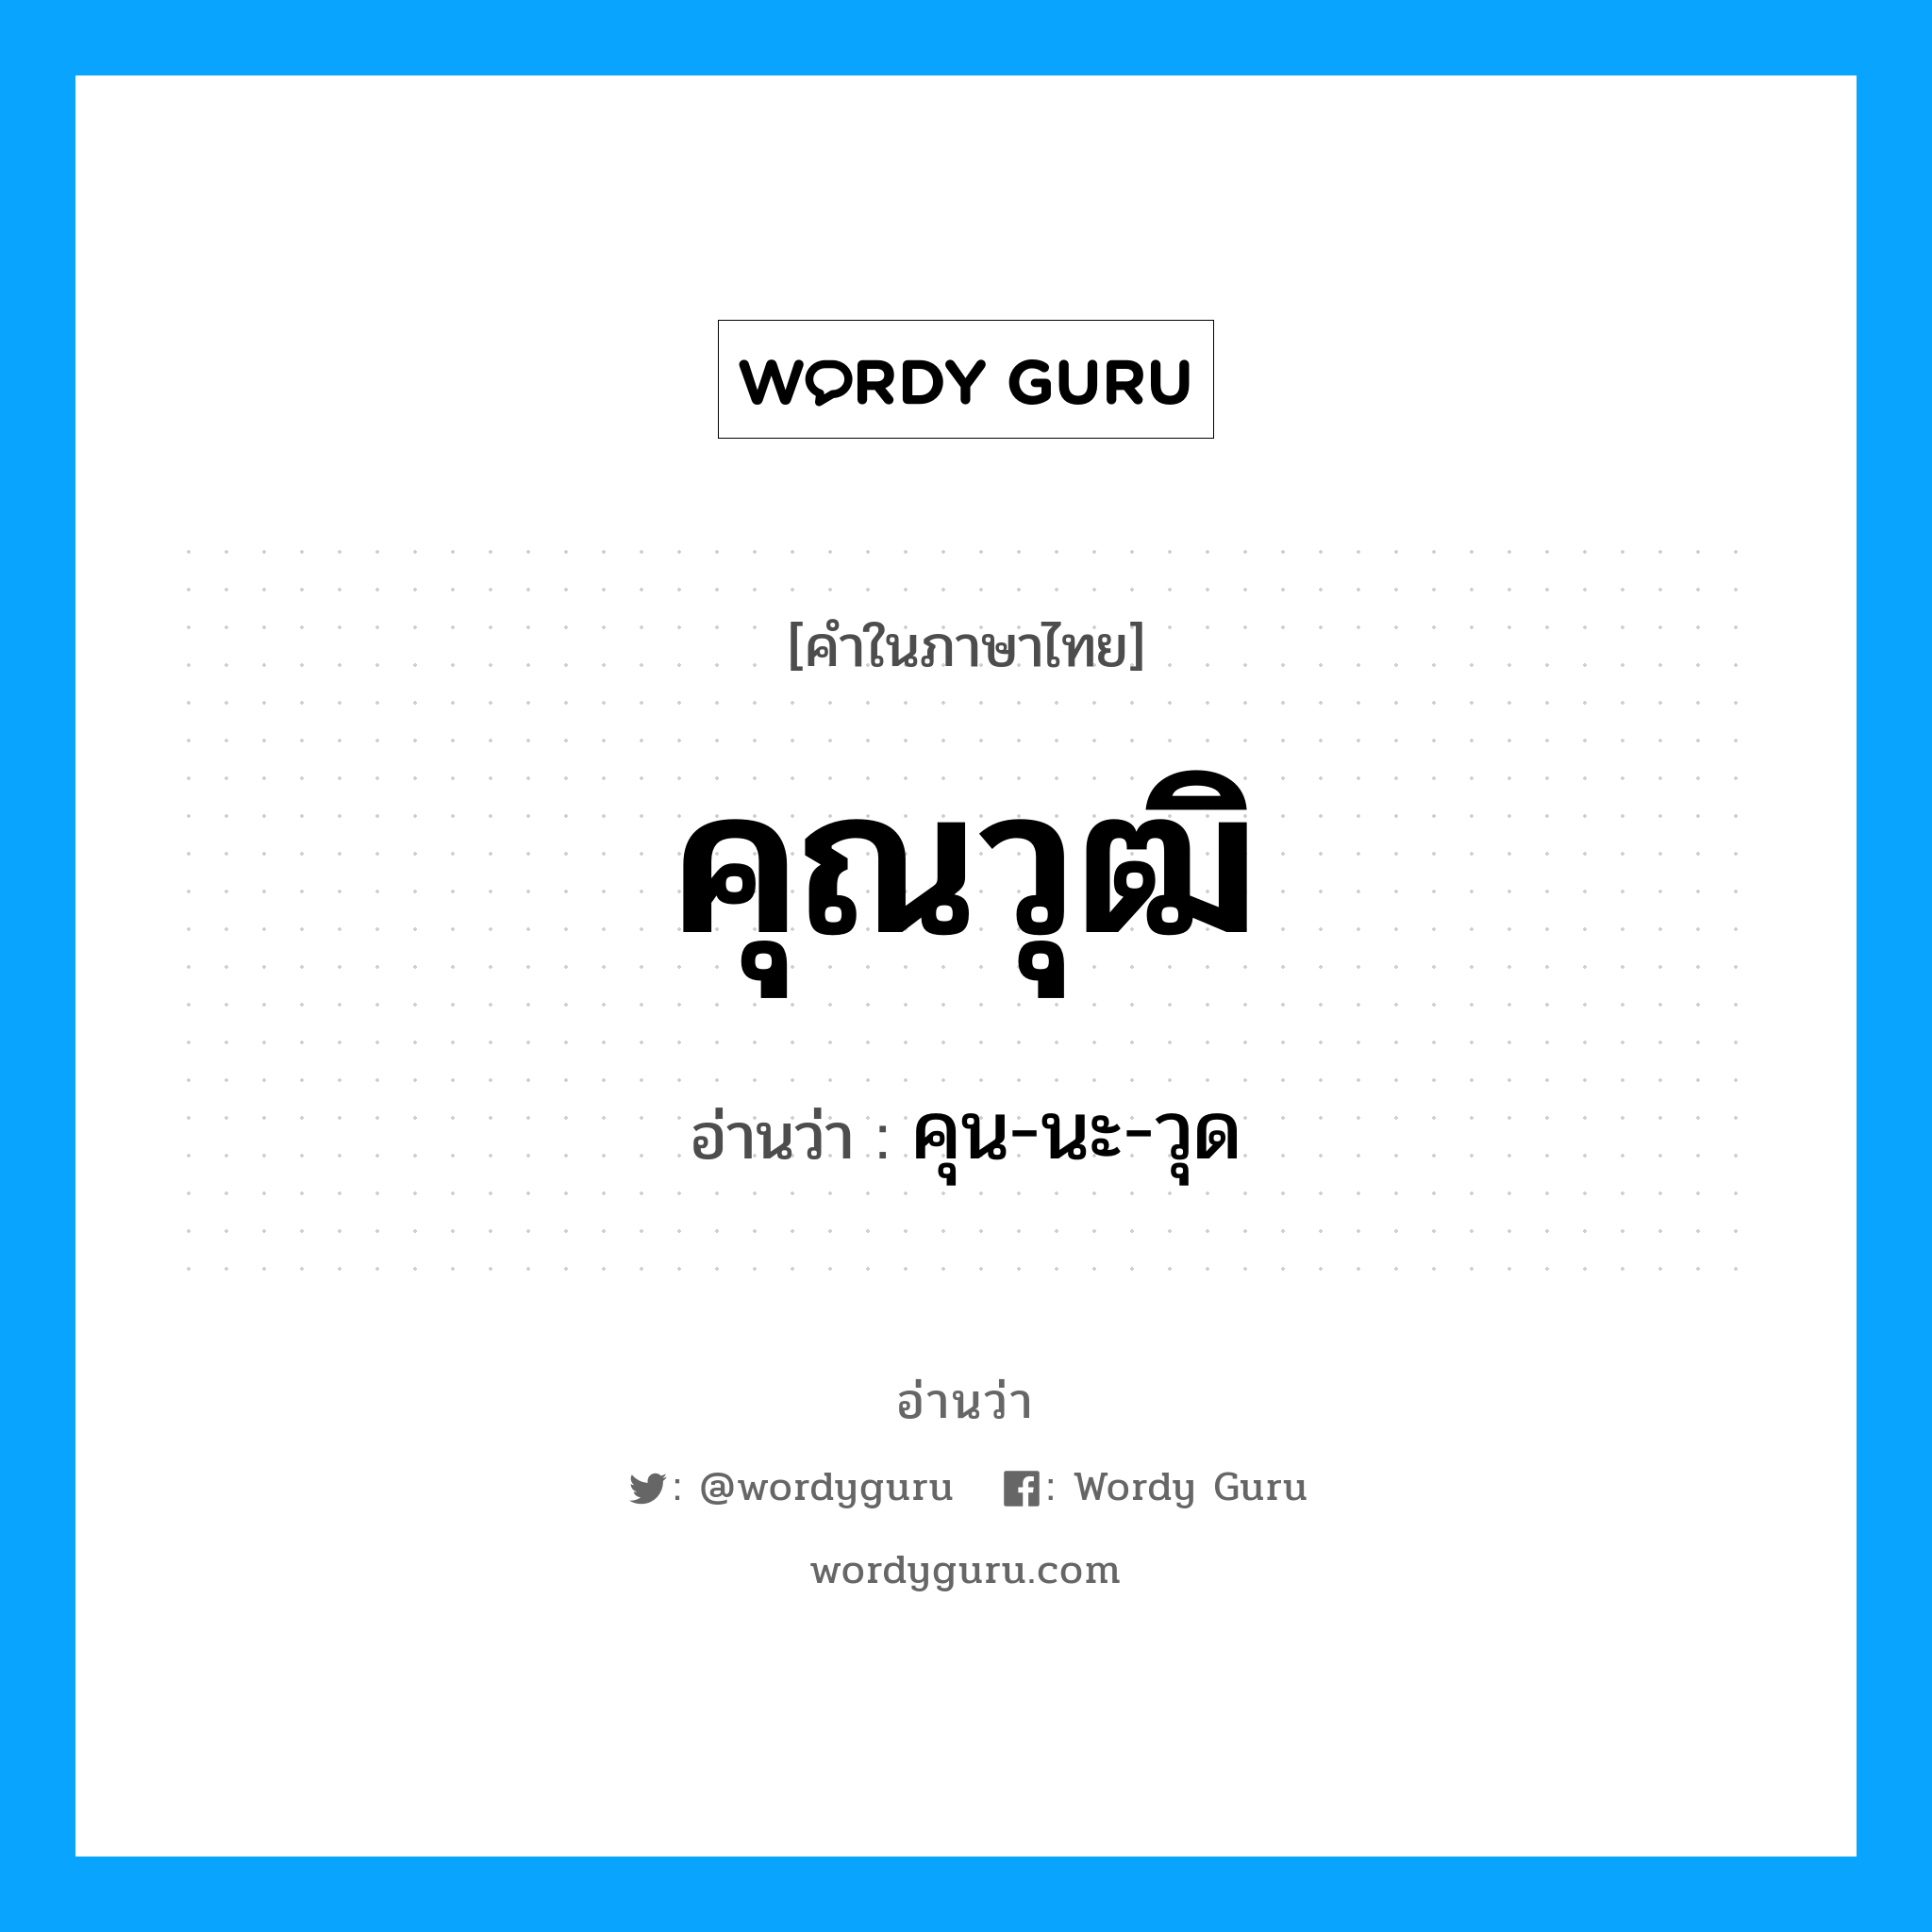 คุน-นะ-วุด เป็นคำอ่านของคำไหน?, คำในภาษาไทย คุน-นะ-วุด อ่านว่า คุณวุฒิ